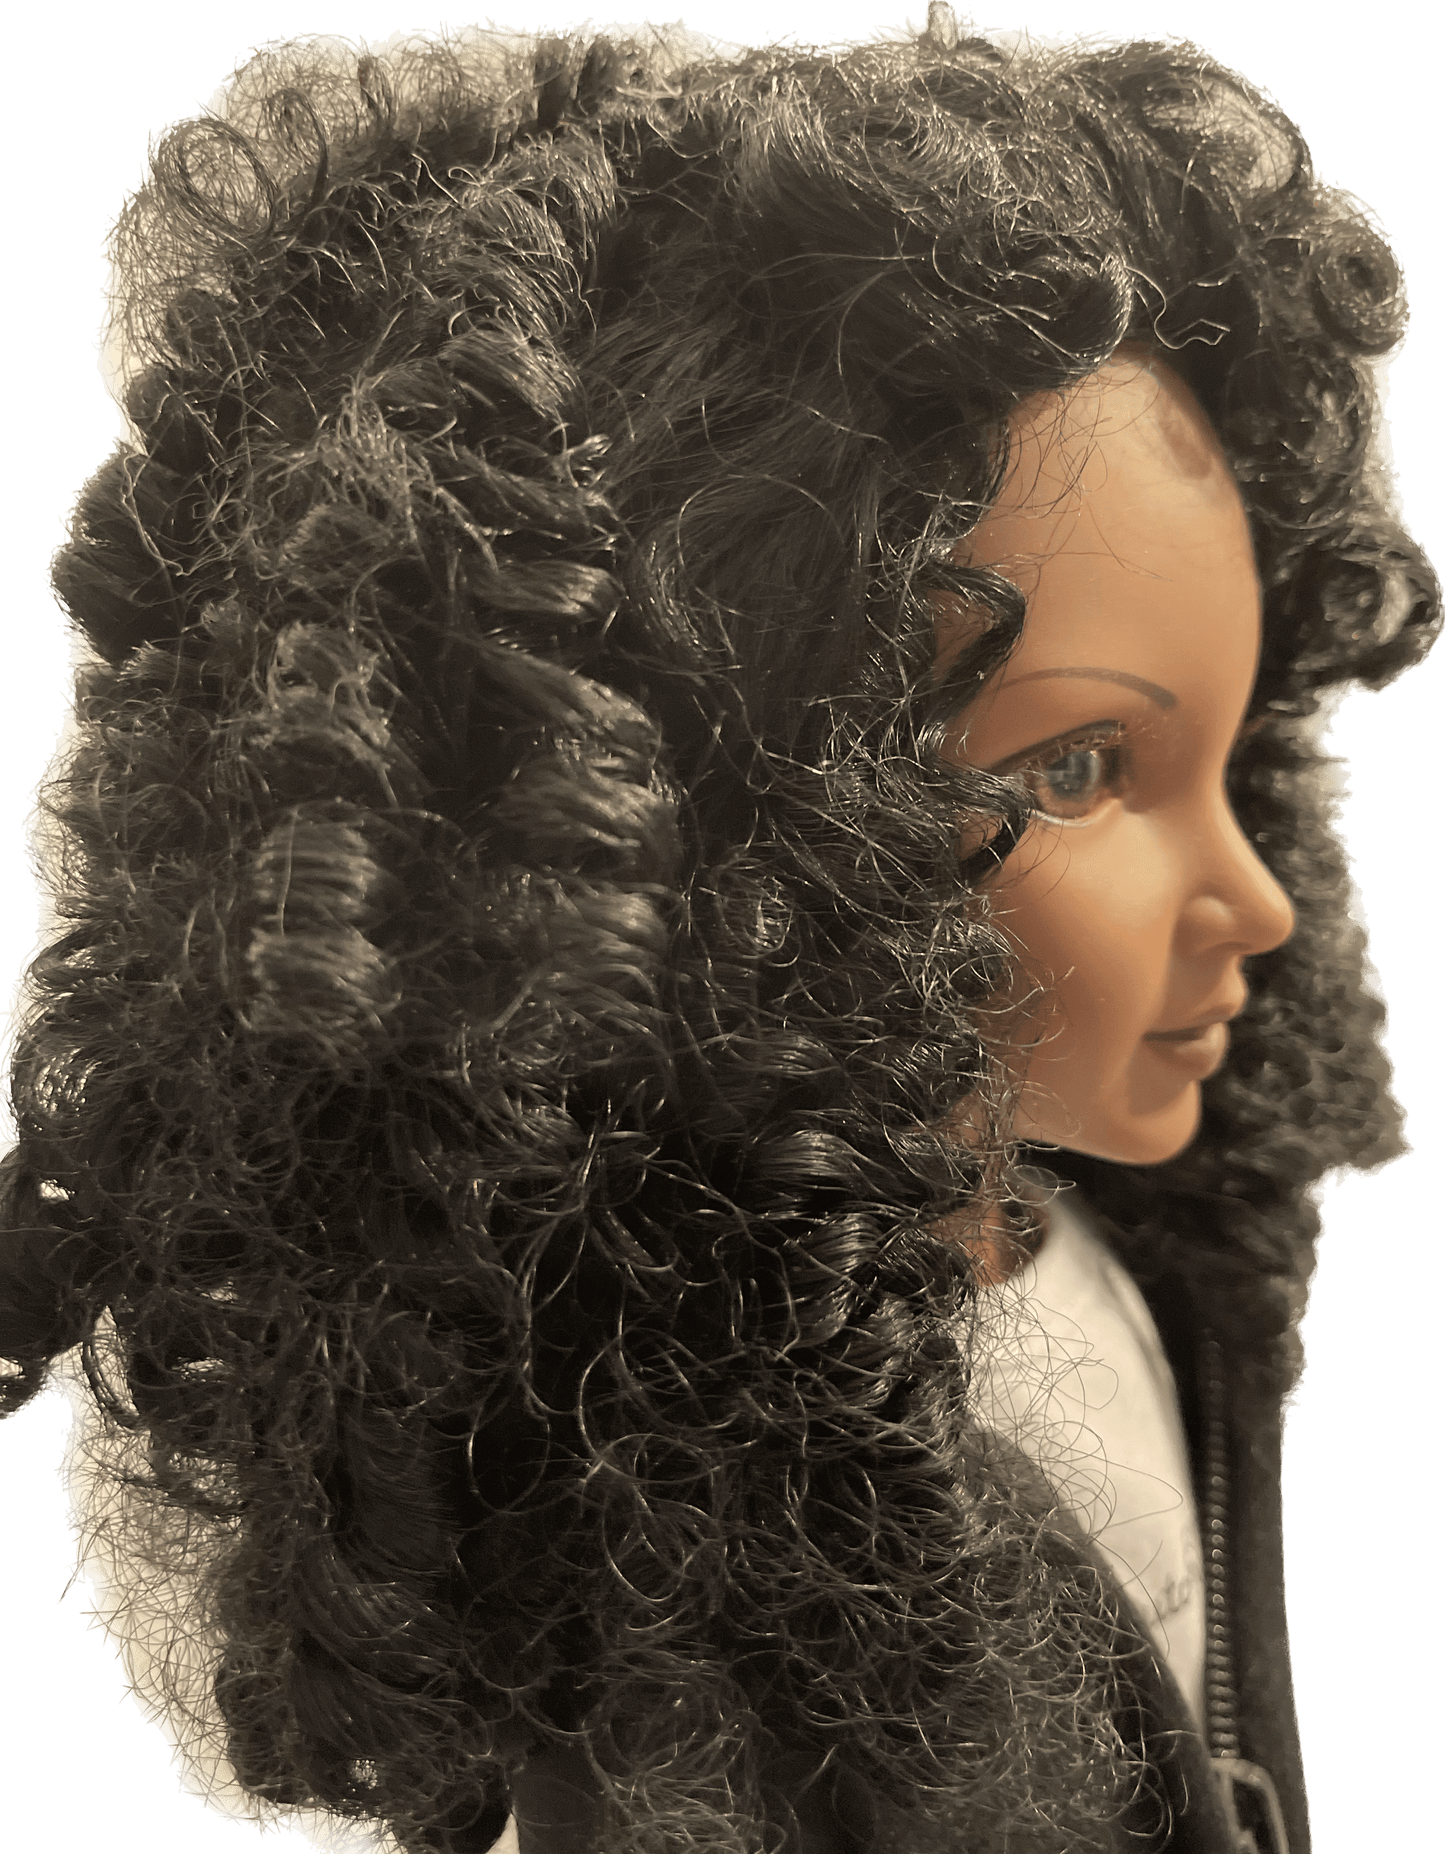 18” African American Fashion Doll- Zaria